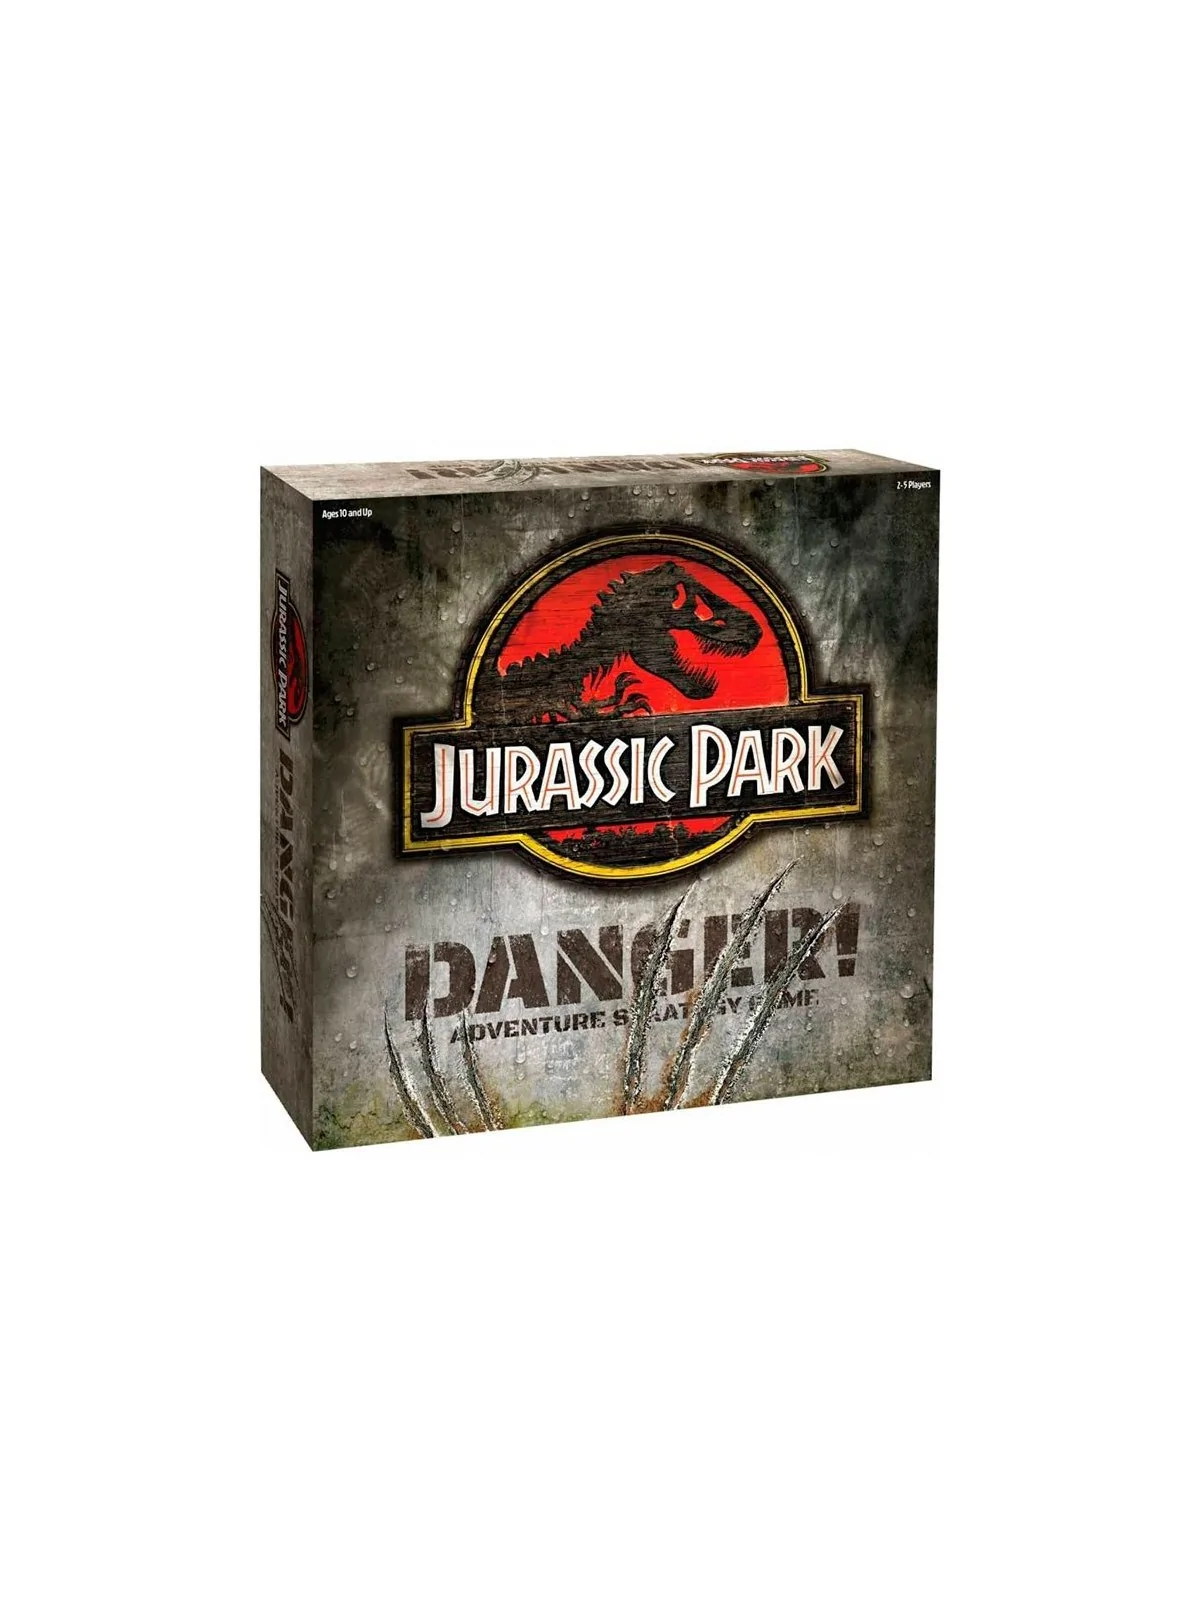 Comprar Jurassic Park Danger! barato al mejor precio 46,75 € de Ravens